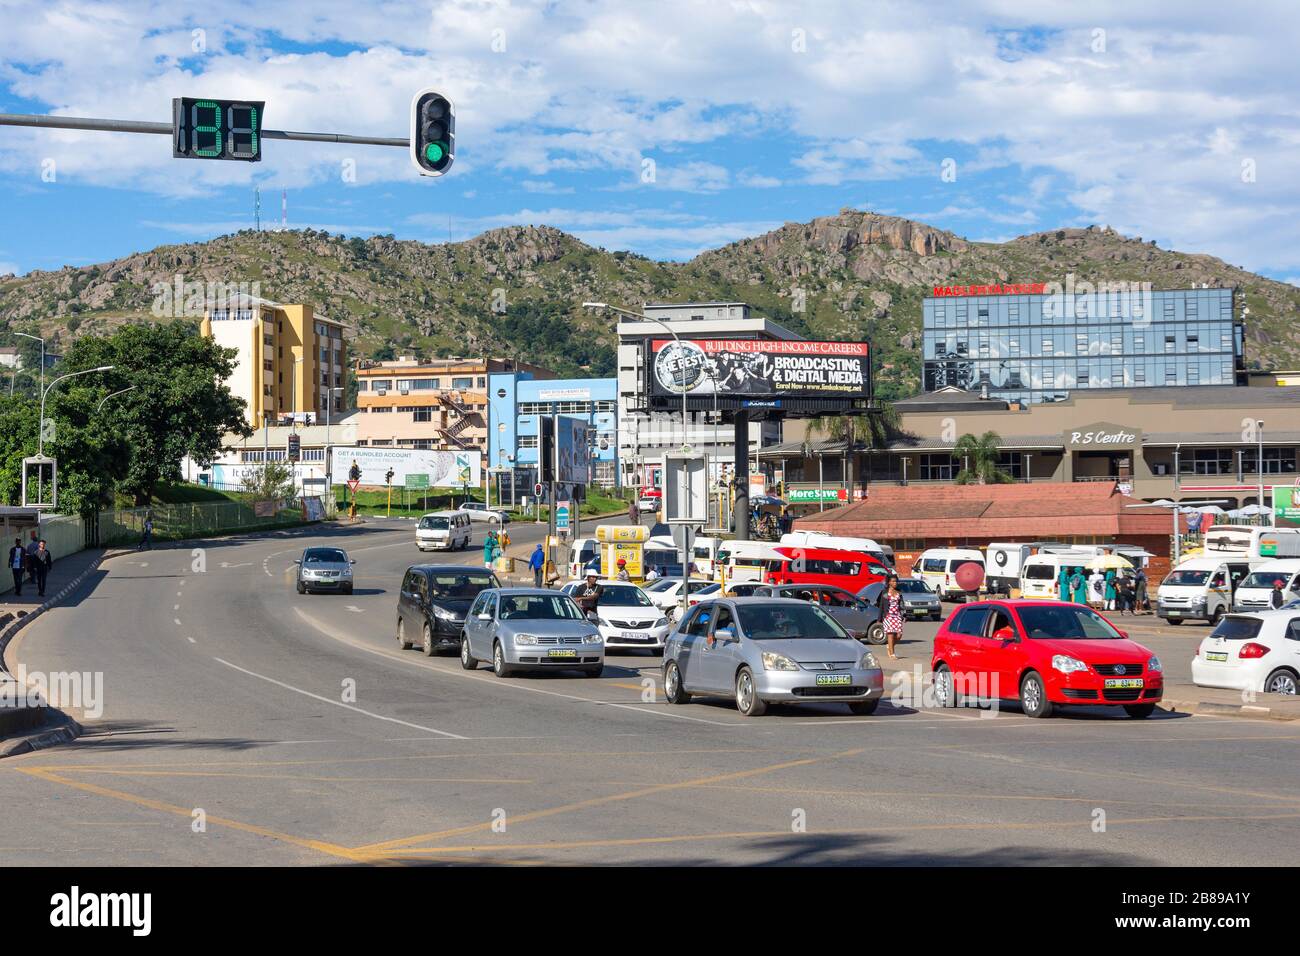 Dr Sishayi Road in city centre, Mbabane, Kingdom of Eswatini (Swaziland) Stock Photo